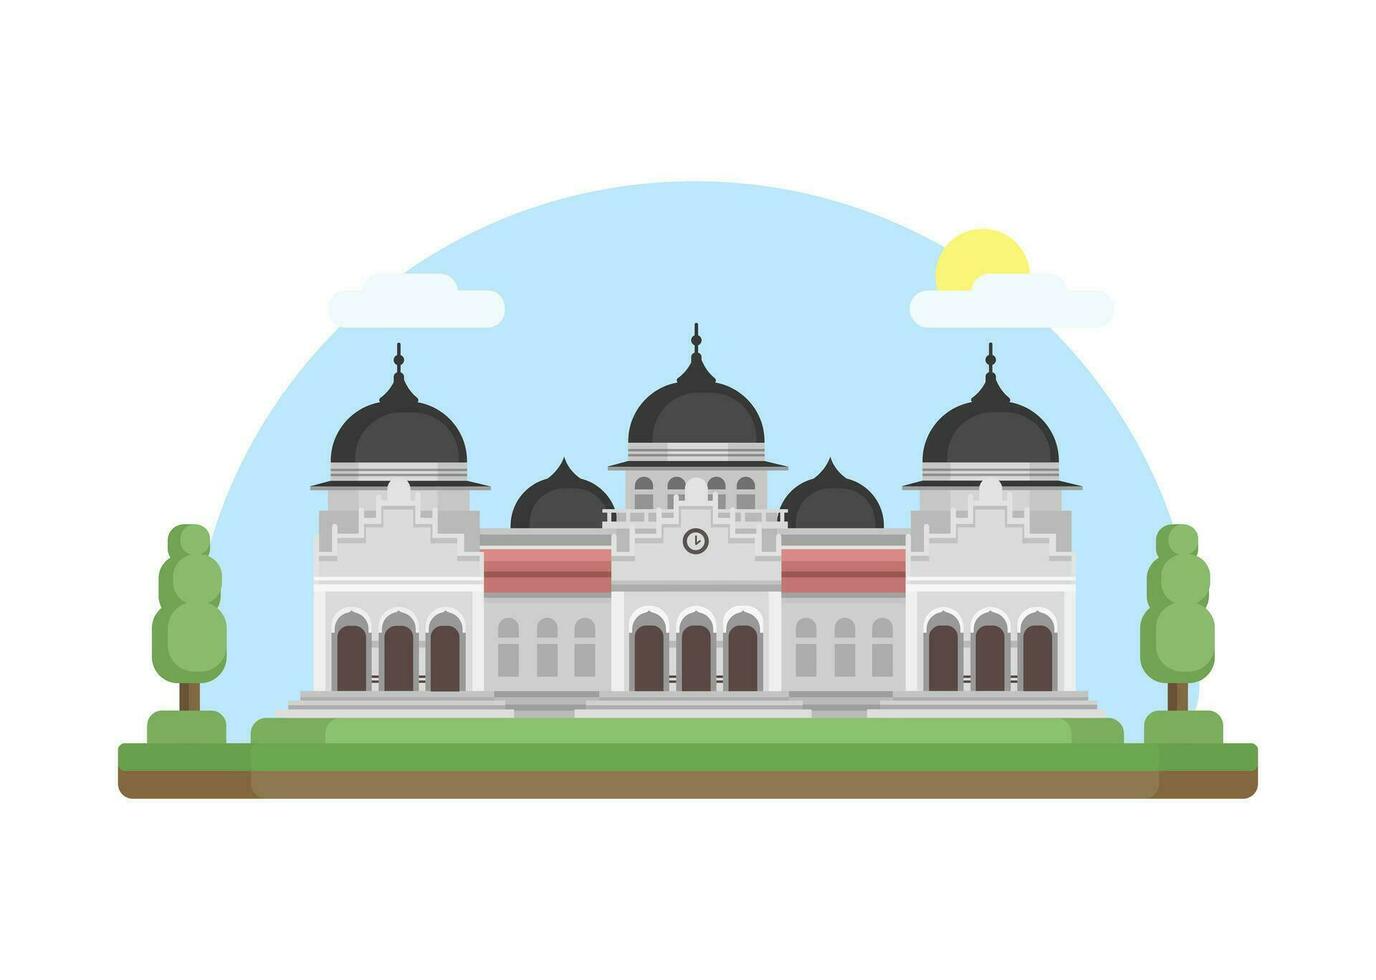 Baiturrahman Grand Mosque Aceh, Indonesia Landmark Building Flat Design illustration Vector